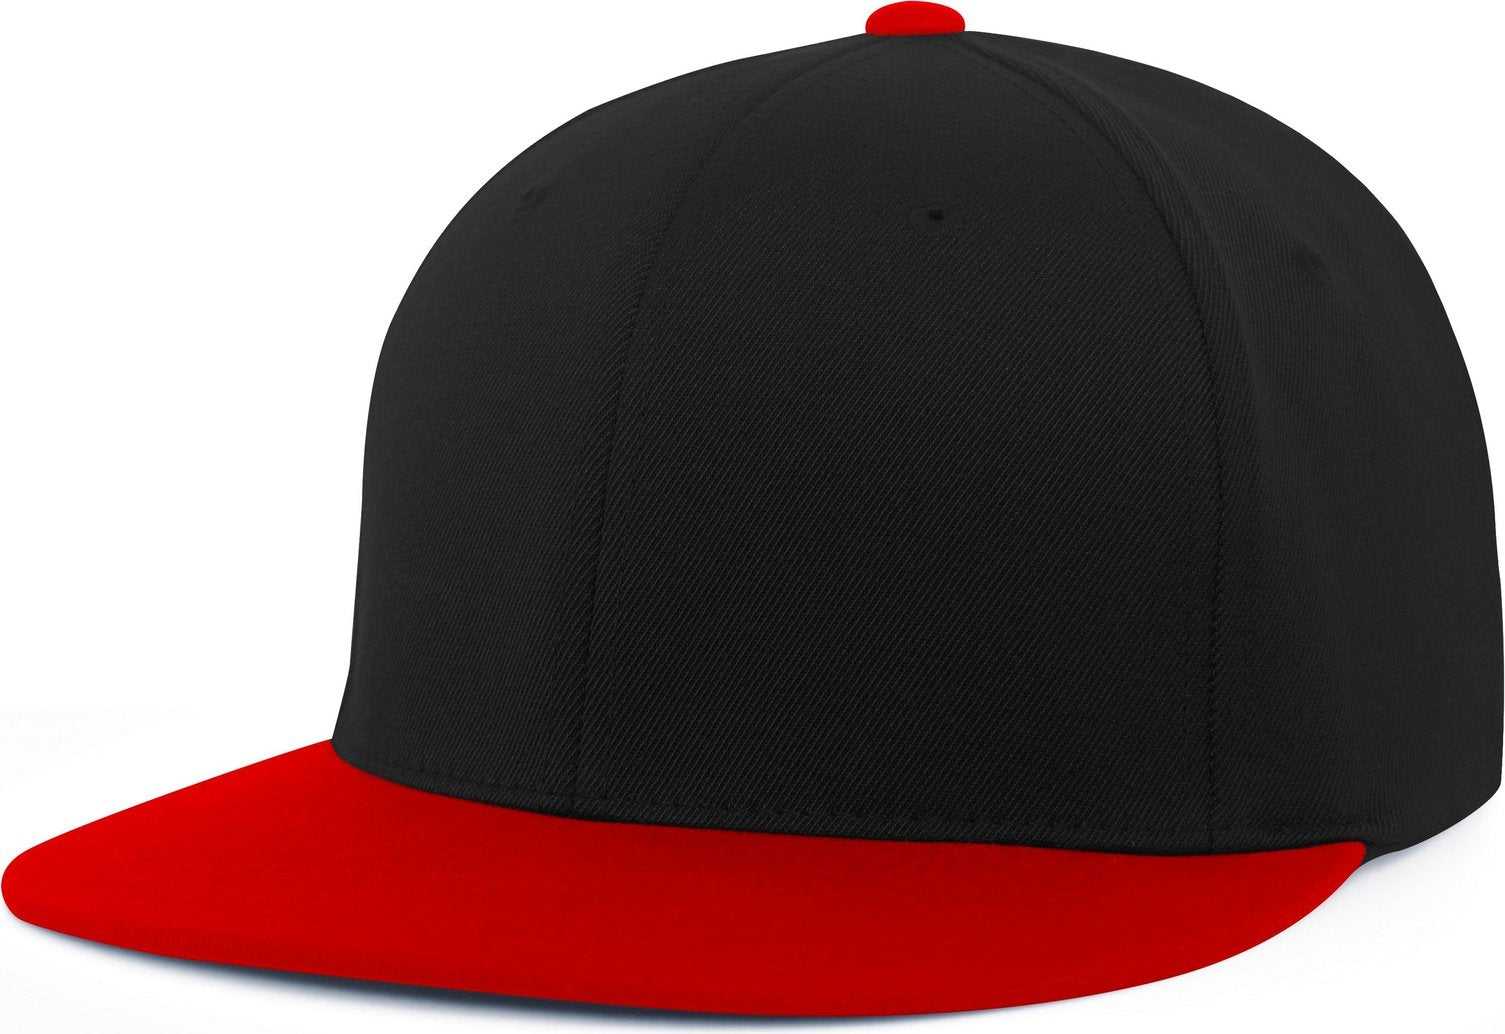 Pacific Headwear Es811 Premium A/C?›?ý Performance Flexfit Cap - Black Red - HIT a Double